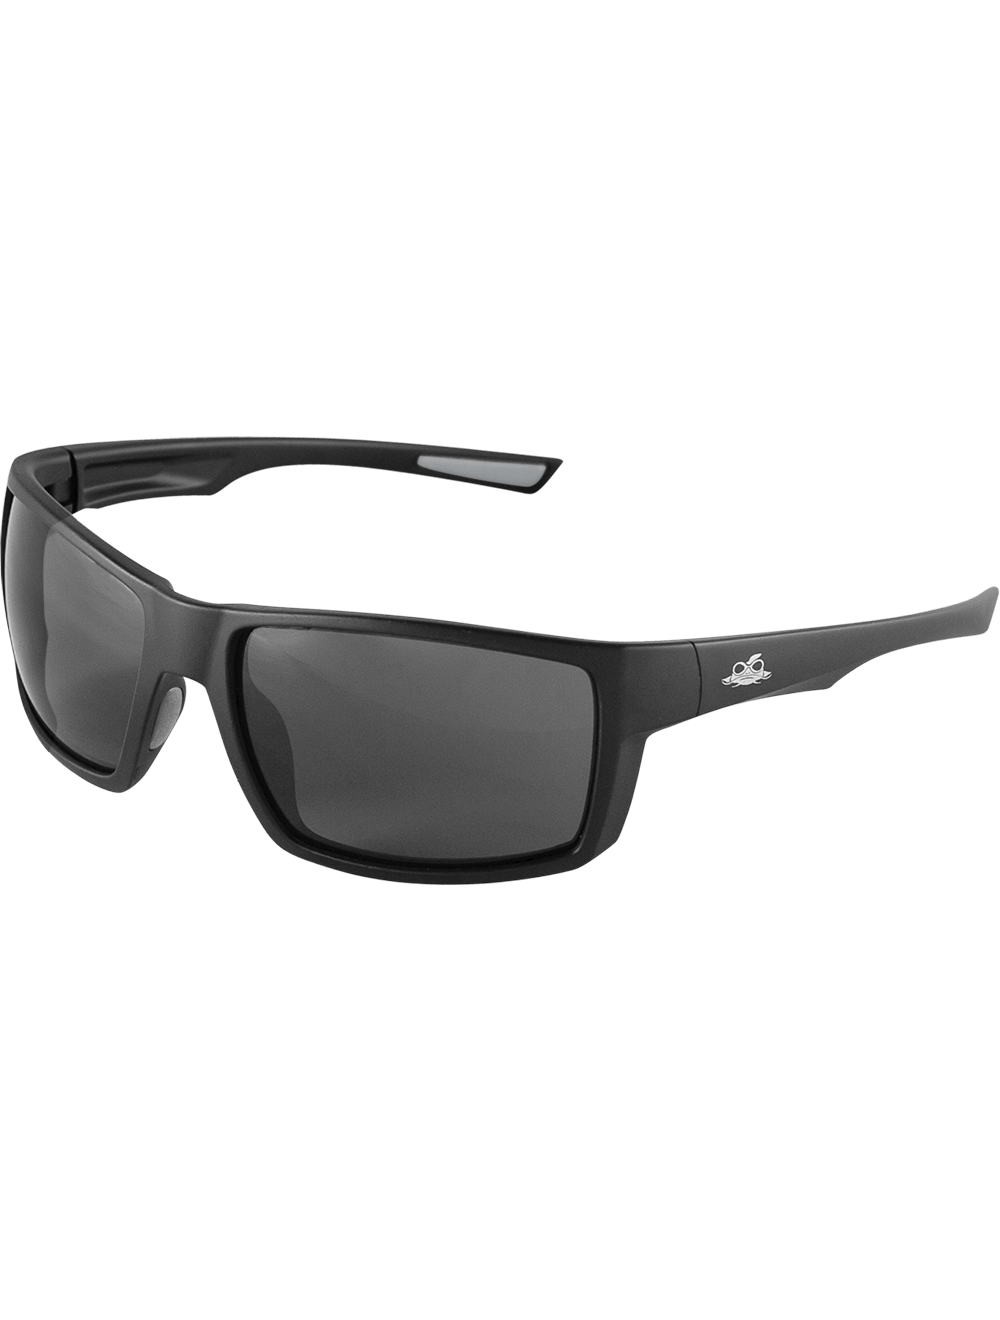 Sawfish™ Smoke Anti-Fog Lens, Matte Black Frame Safety Glasses - BH2663AF